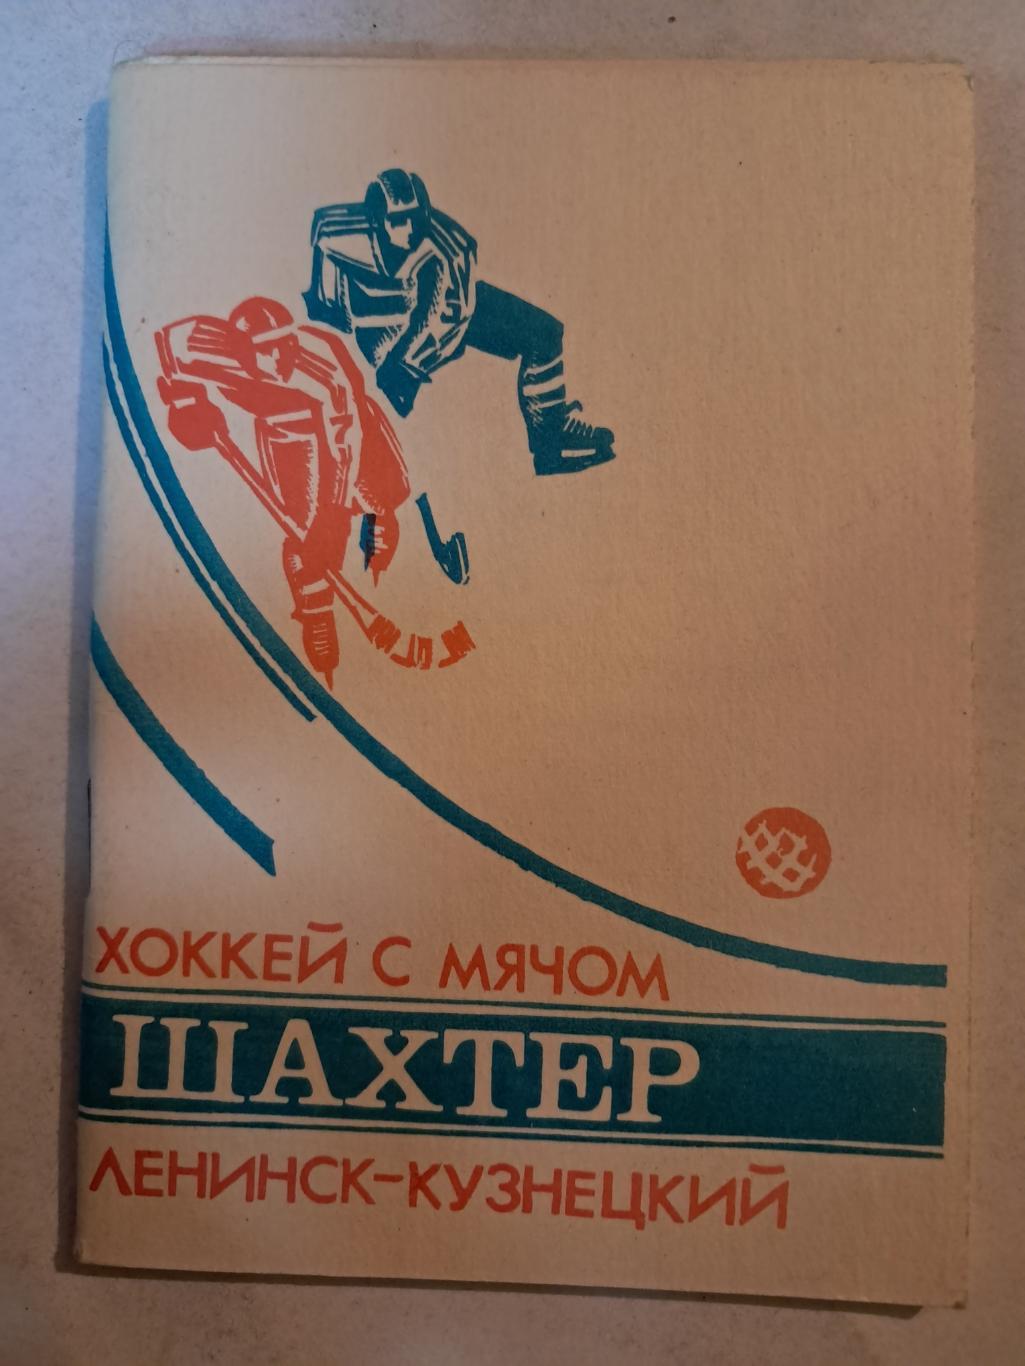 Календарь-справочник по хоккею с мячом 1988/89 Шахтер Ленинск-Кузнецкий